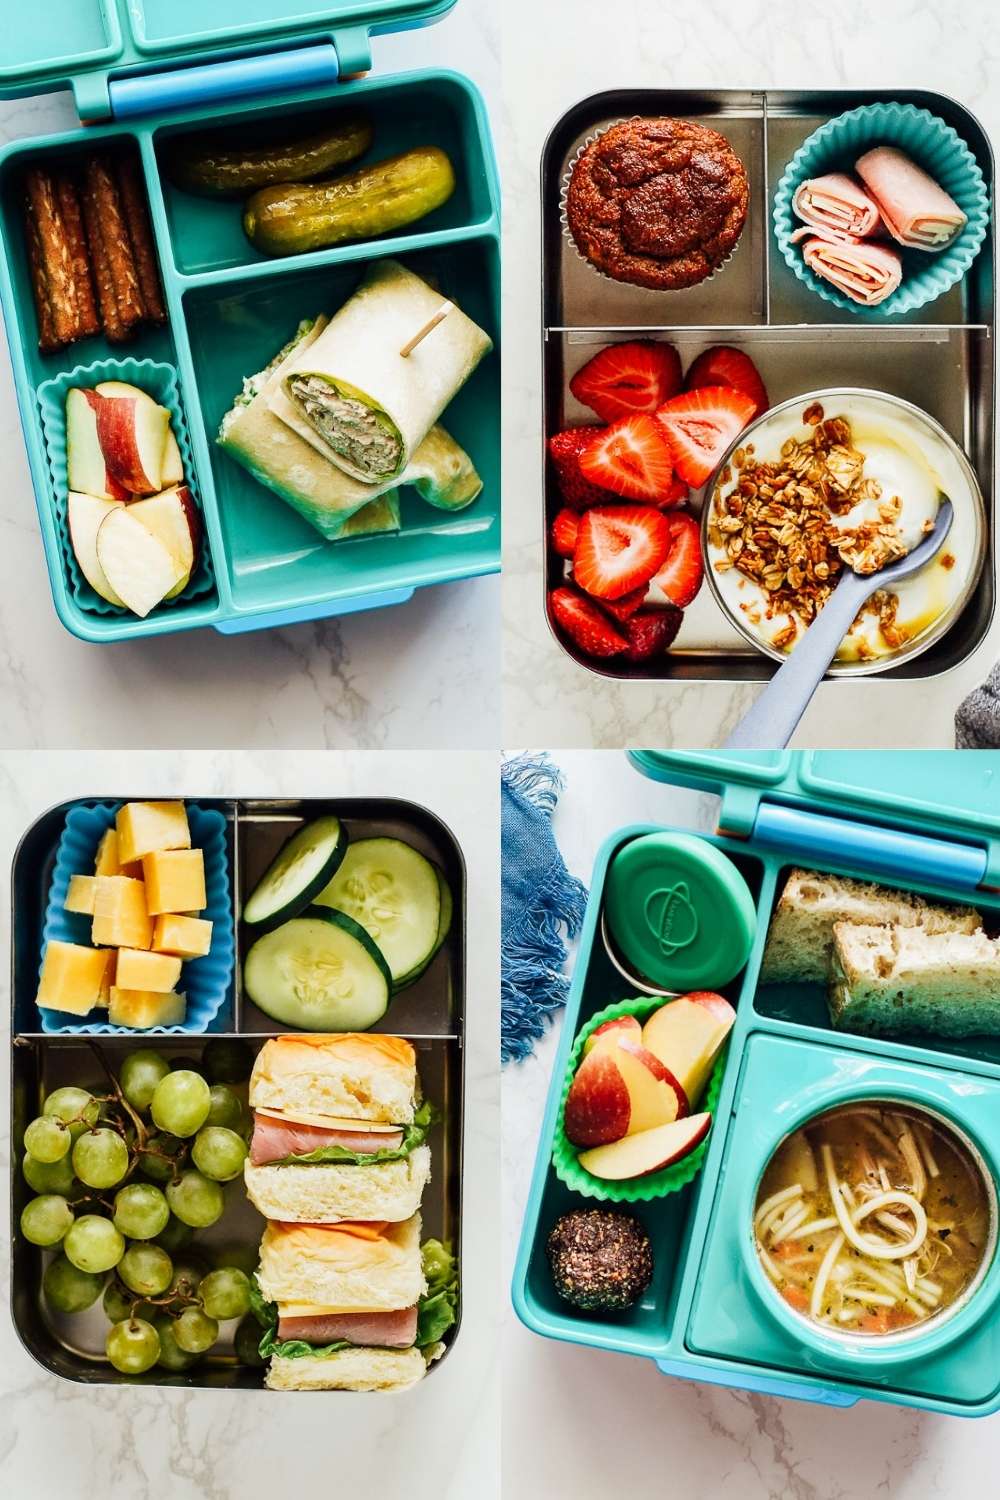 4 school lunch ideas: wrap, yogurt parfait, sandwich, and chicken noodle soup.